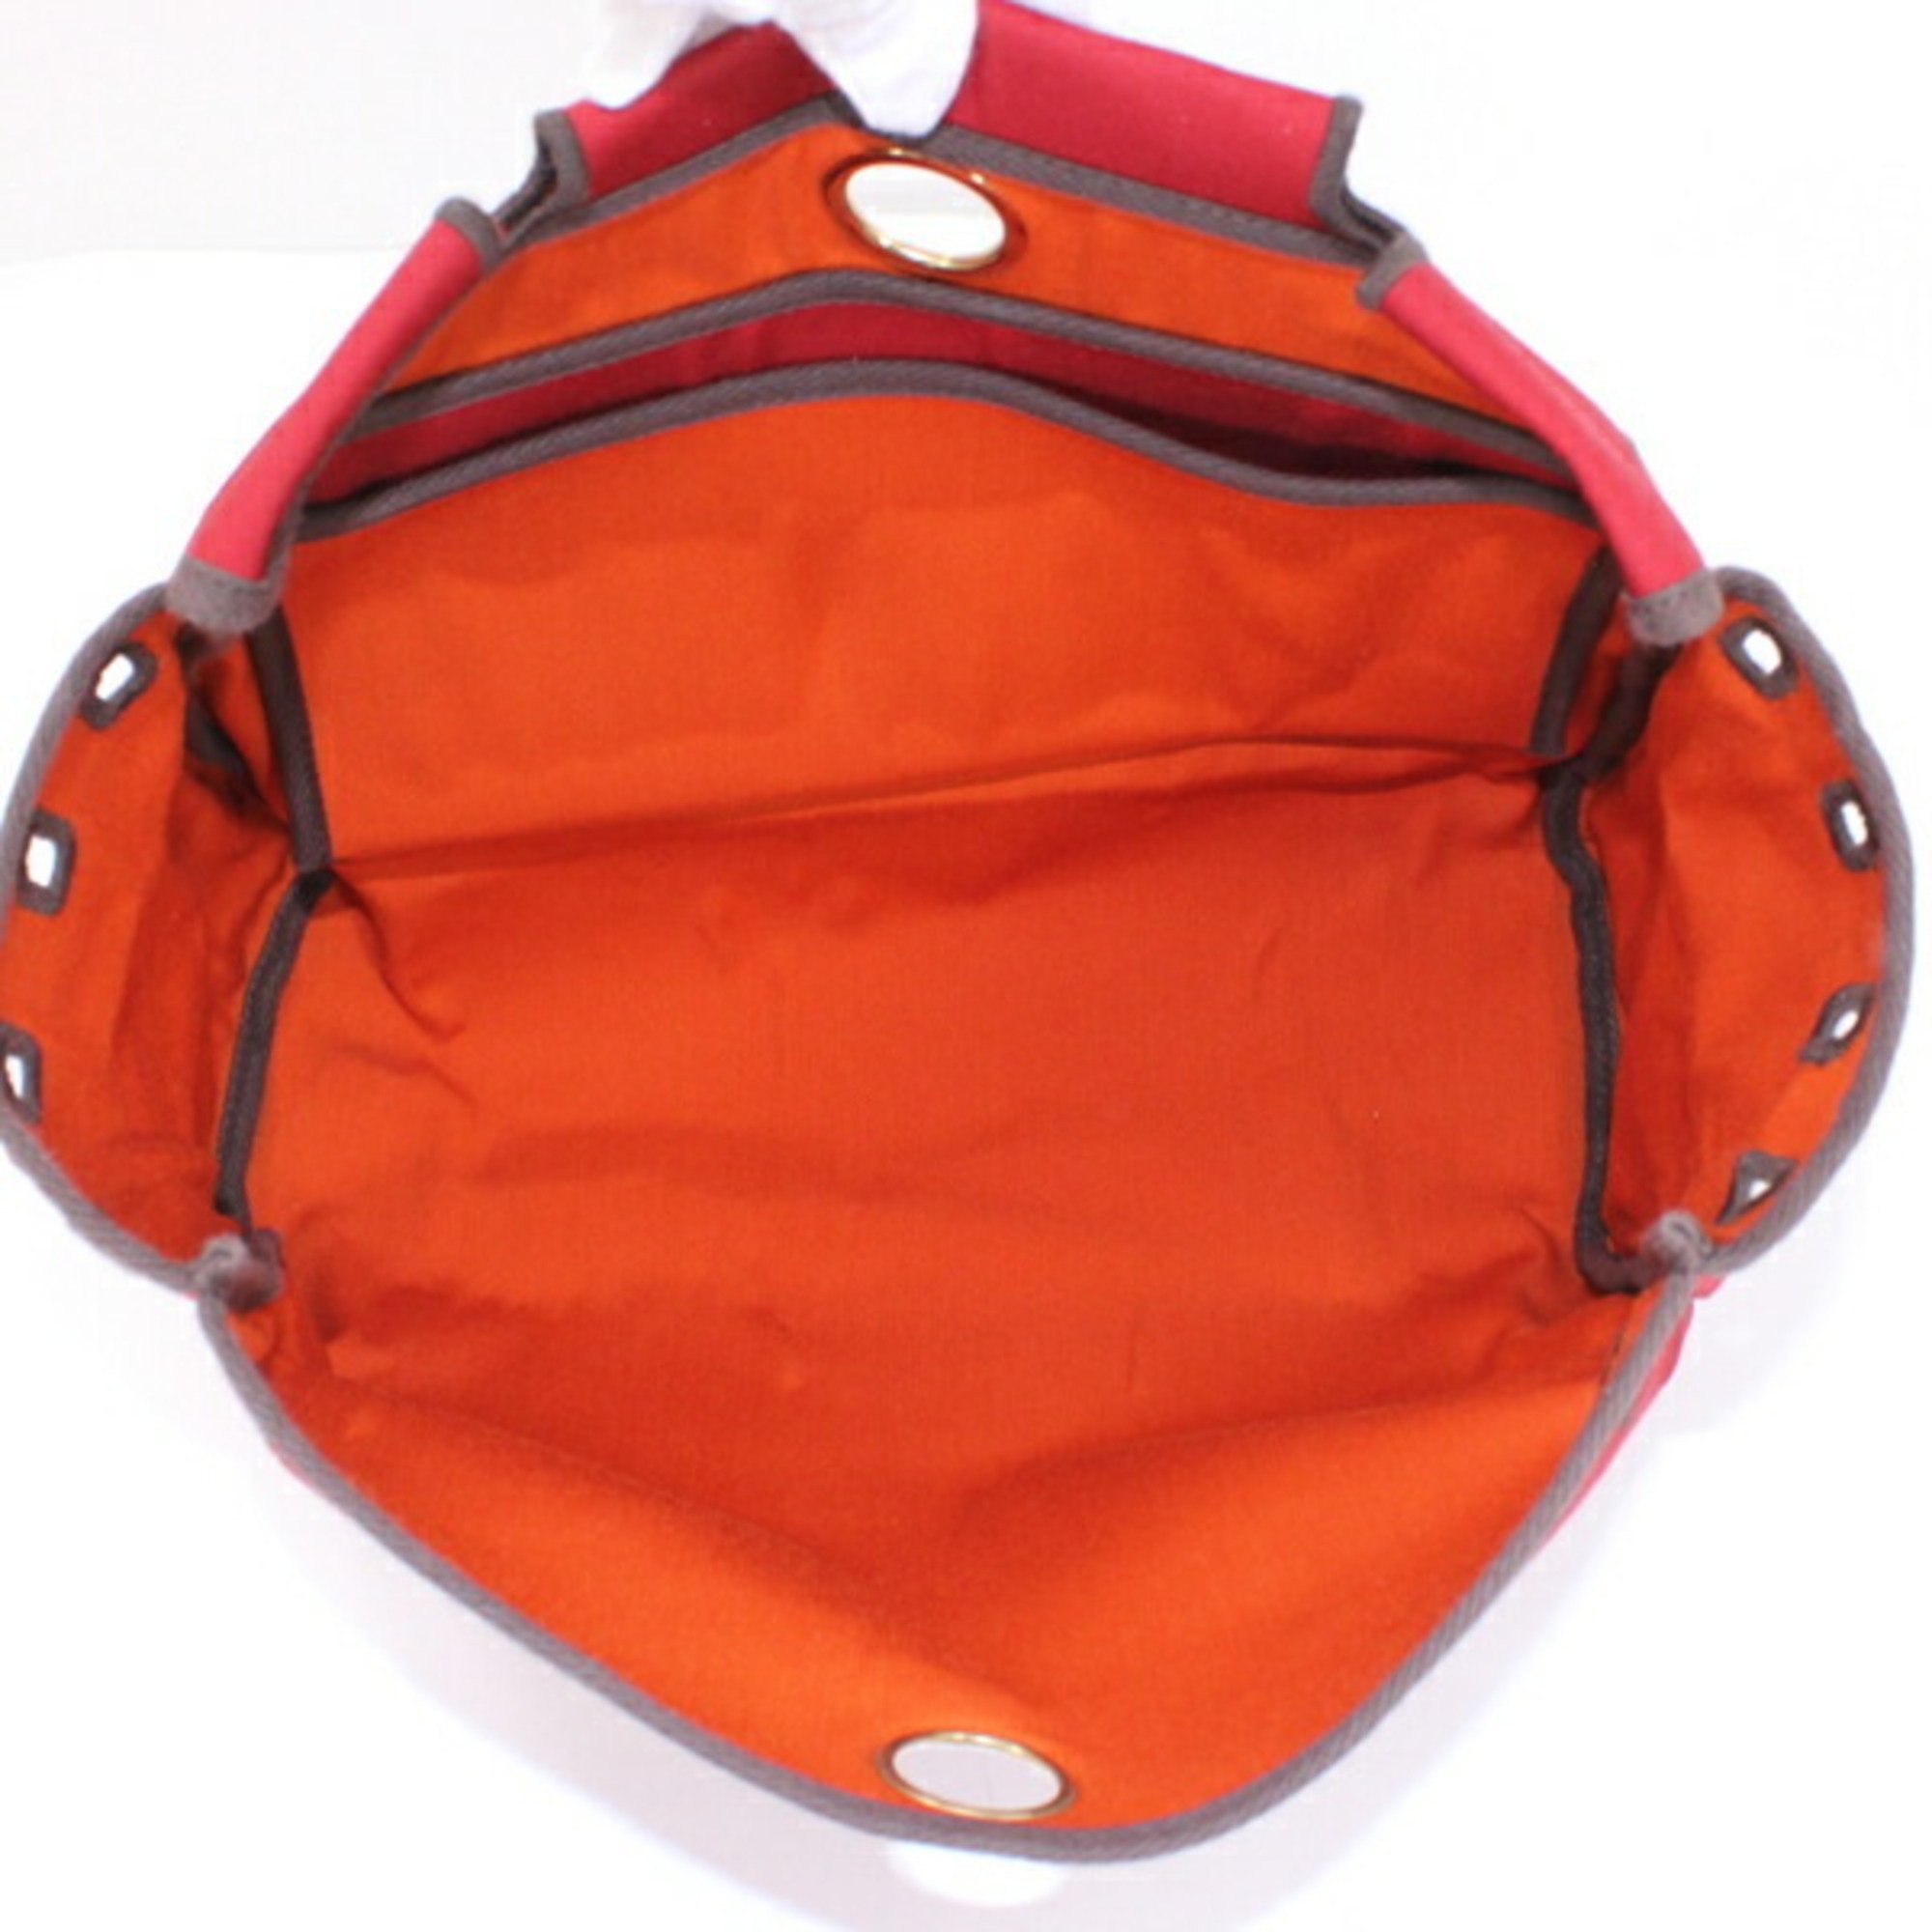 Hermes Airbag PM 2Way Handbag Shoulder Bag Brown Leather Toile Officier Red Orange Padlock Key H Engraved Men's Women's T4524